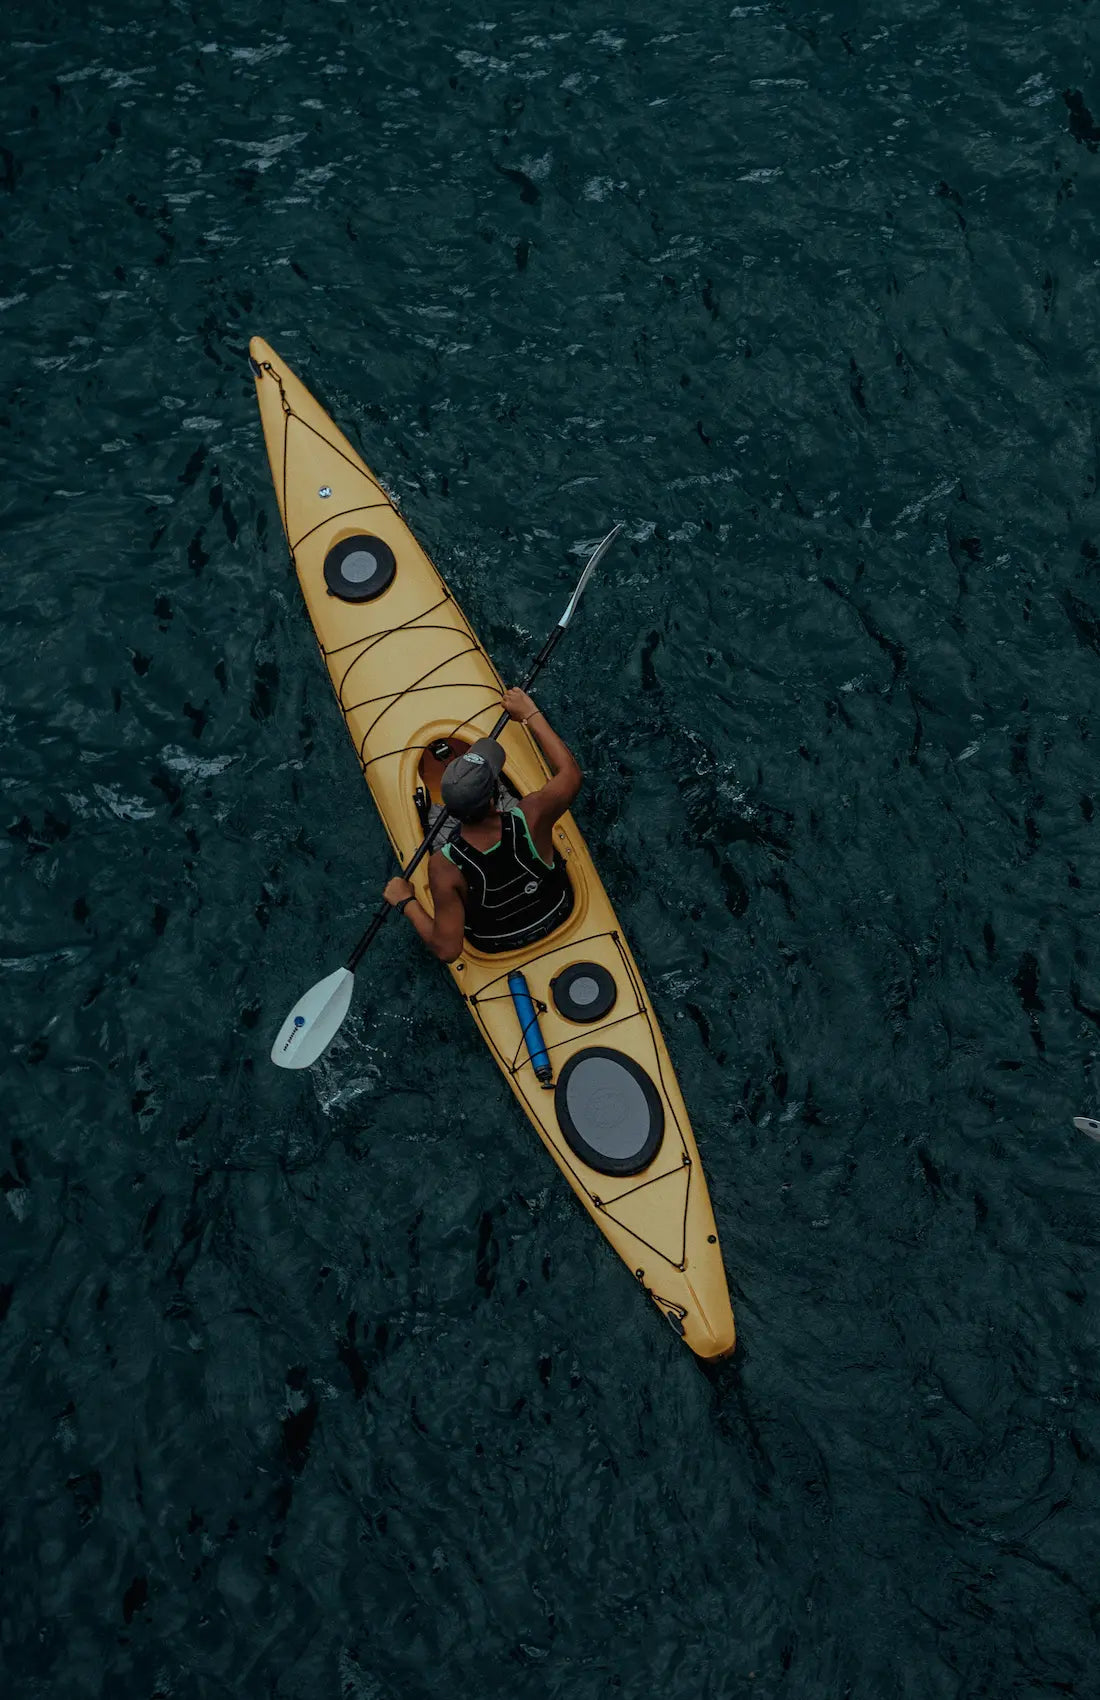 Kayak in Wasser 